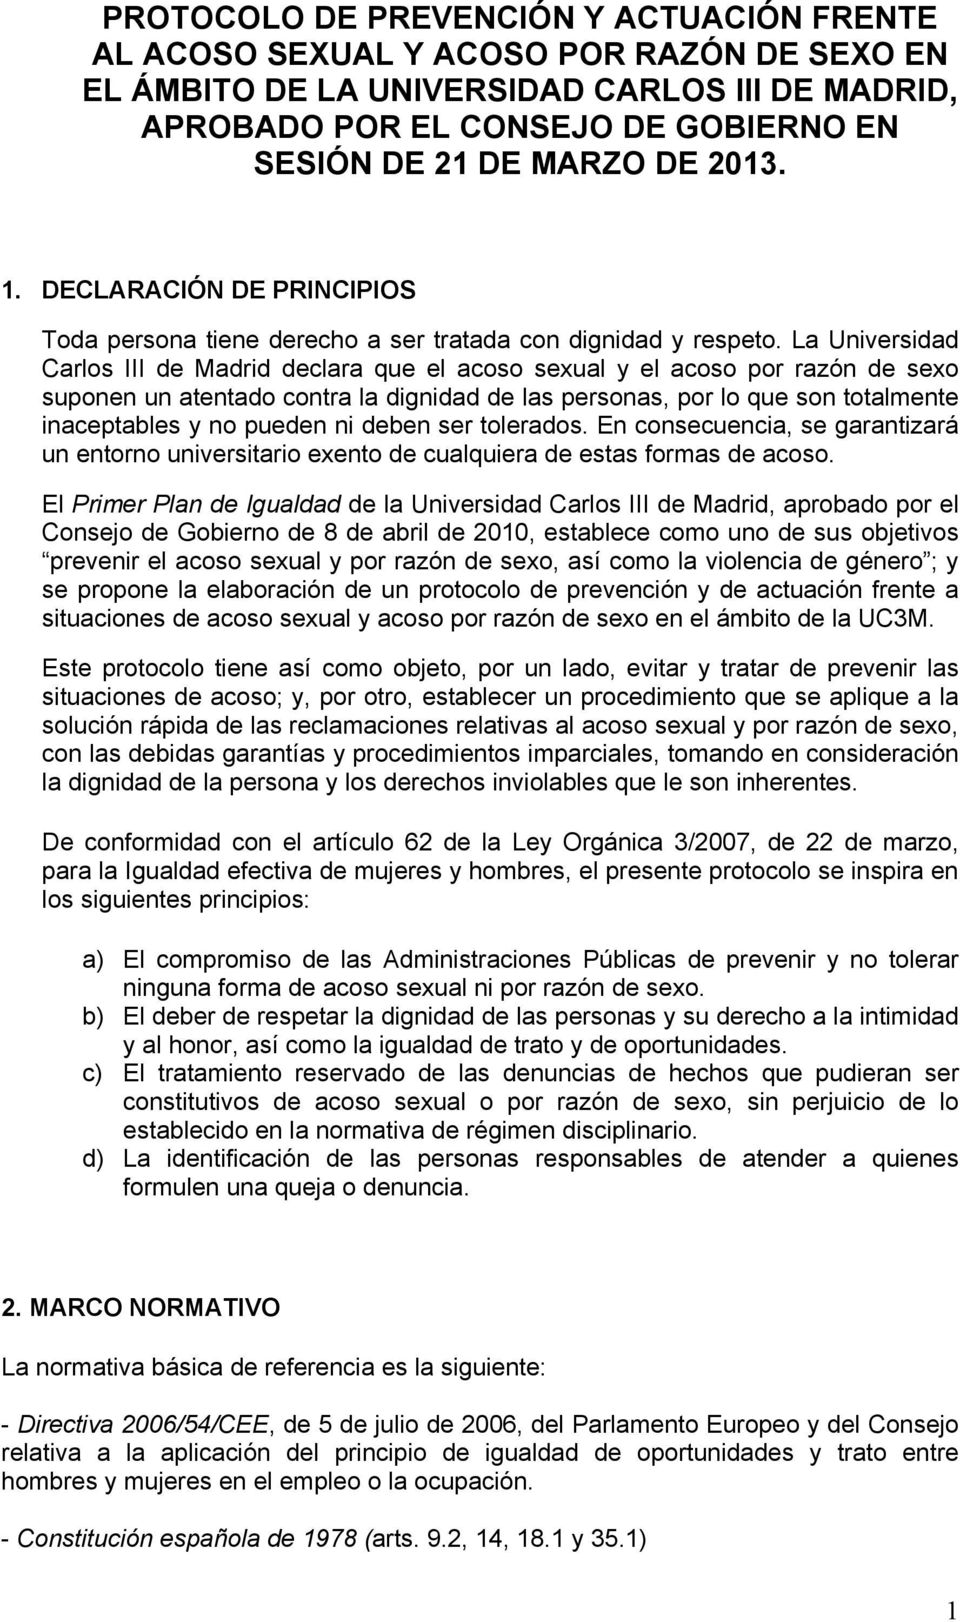 La Universidad Carlos III de Madrid declara que el acoso sexual y el acoso por razón de sexo suponen un atentado contra la dignidad de las personas, por lo que son totalmente inaceptables y no pueden